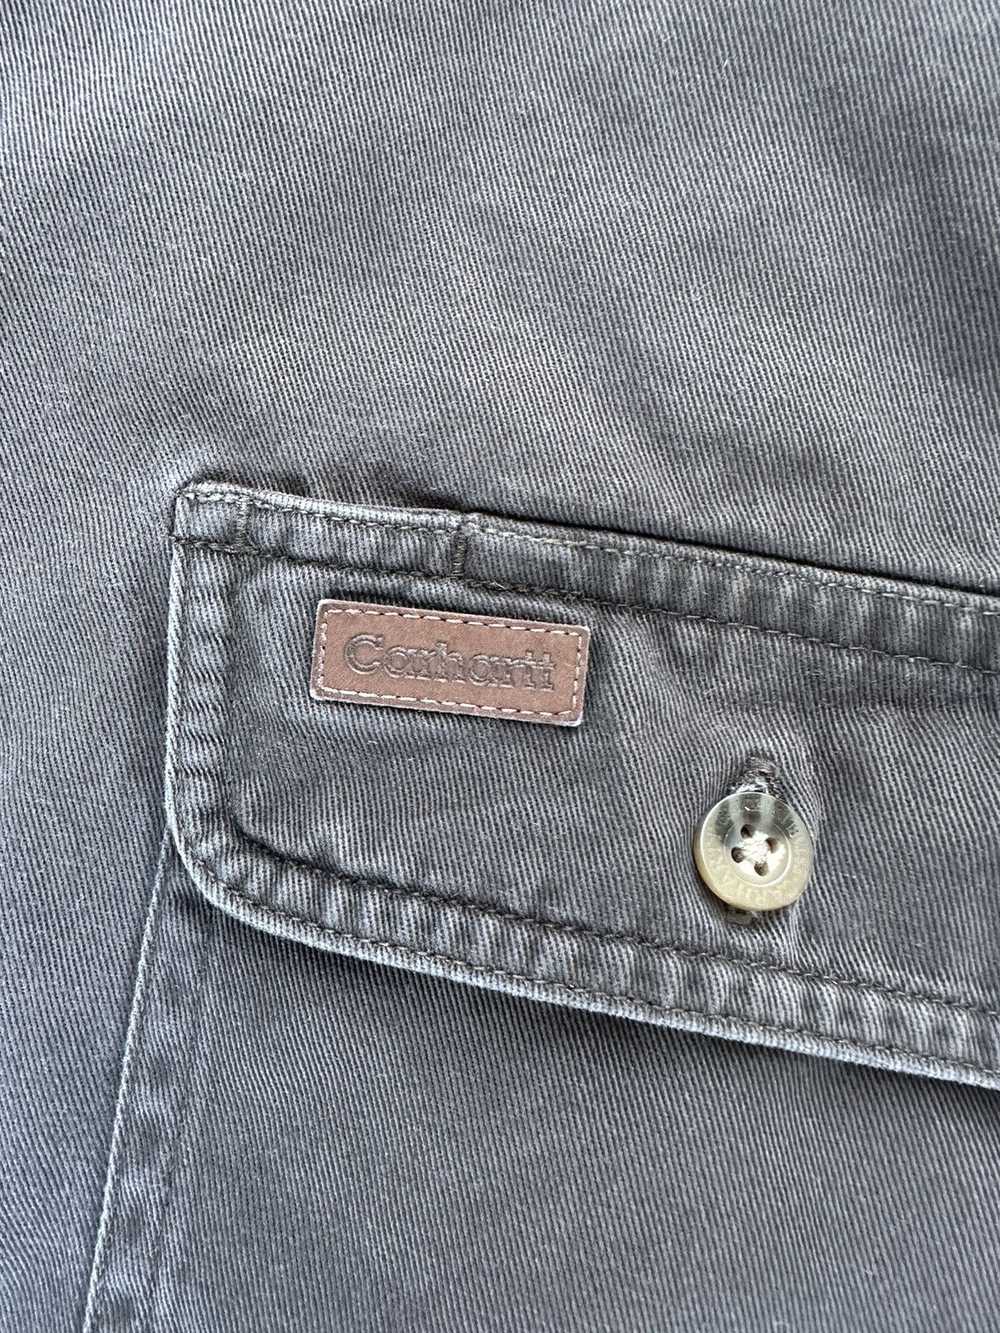 Carhartt Vintage Carhartt Button-Up Shirt - image 3